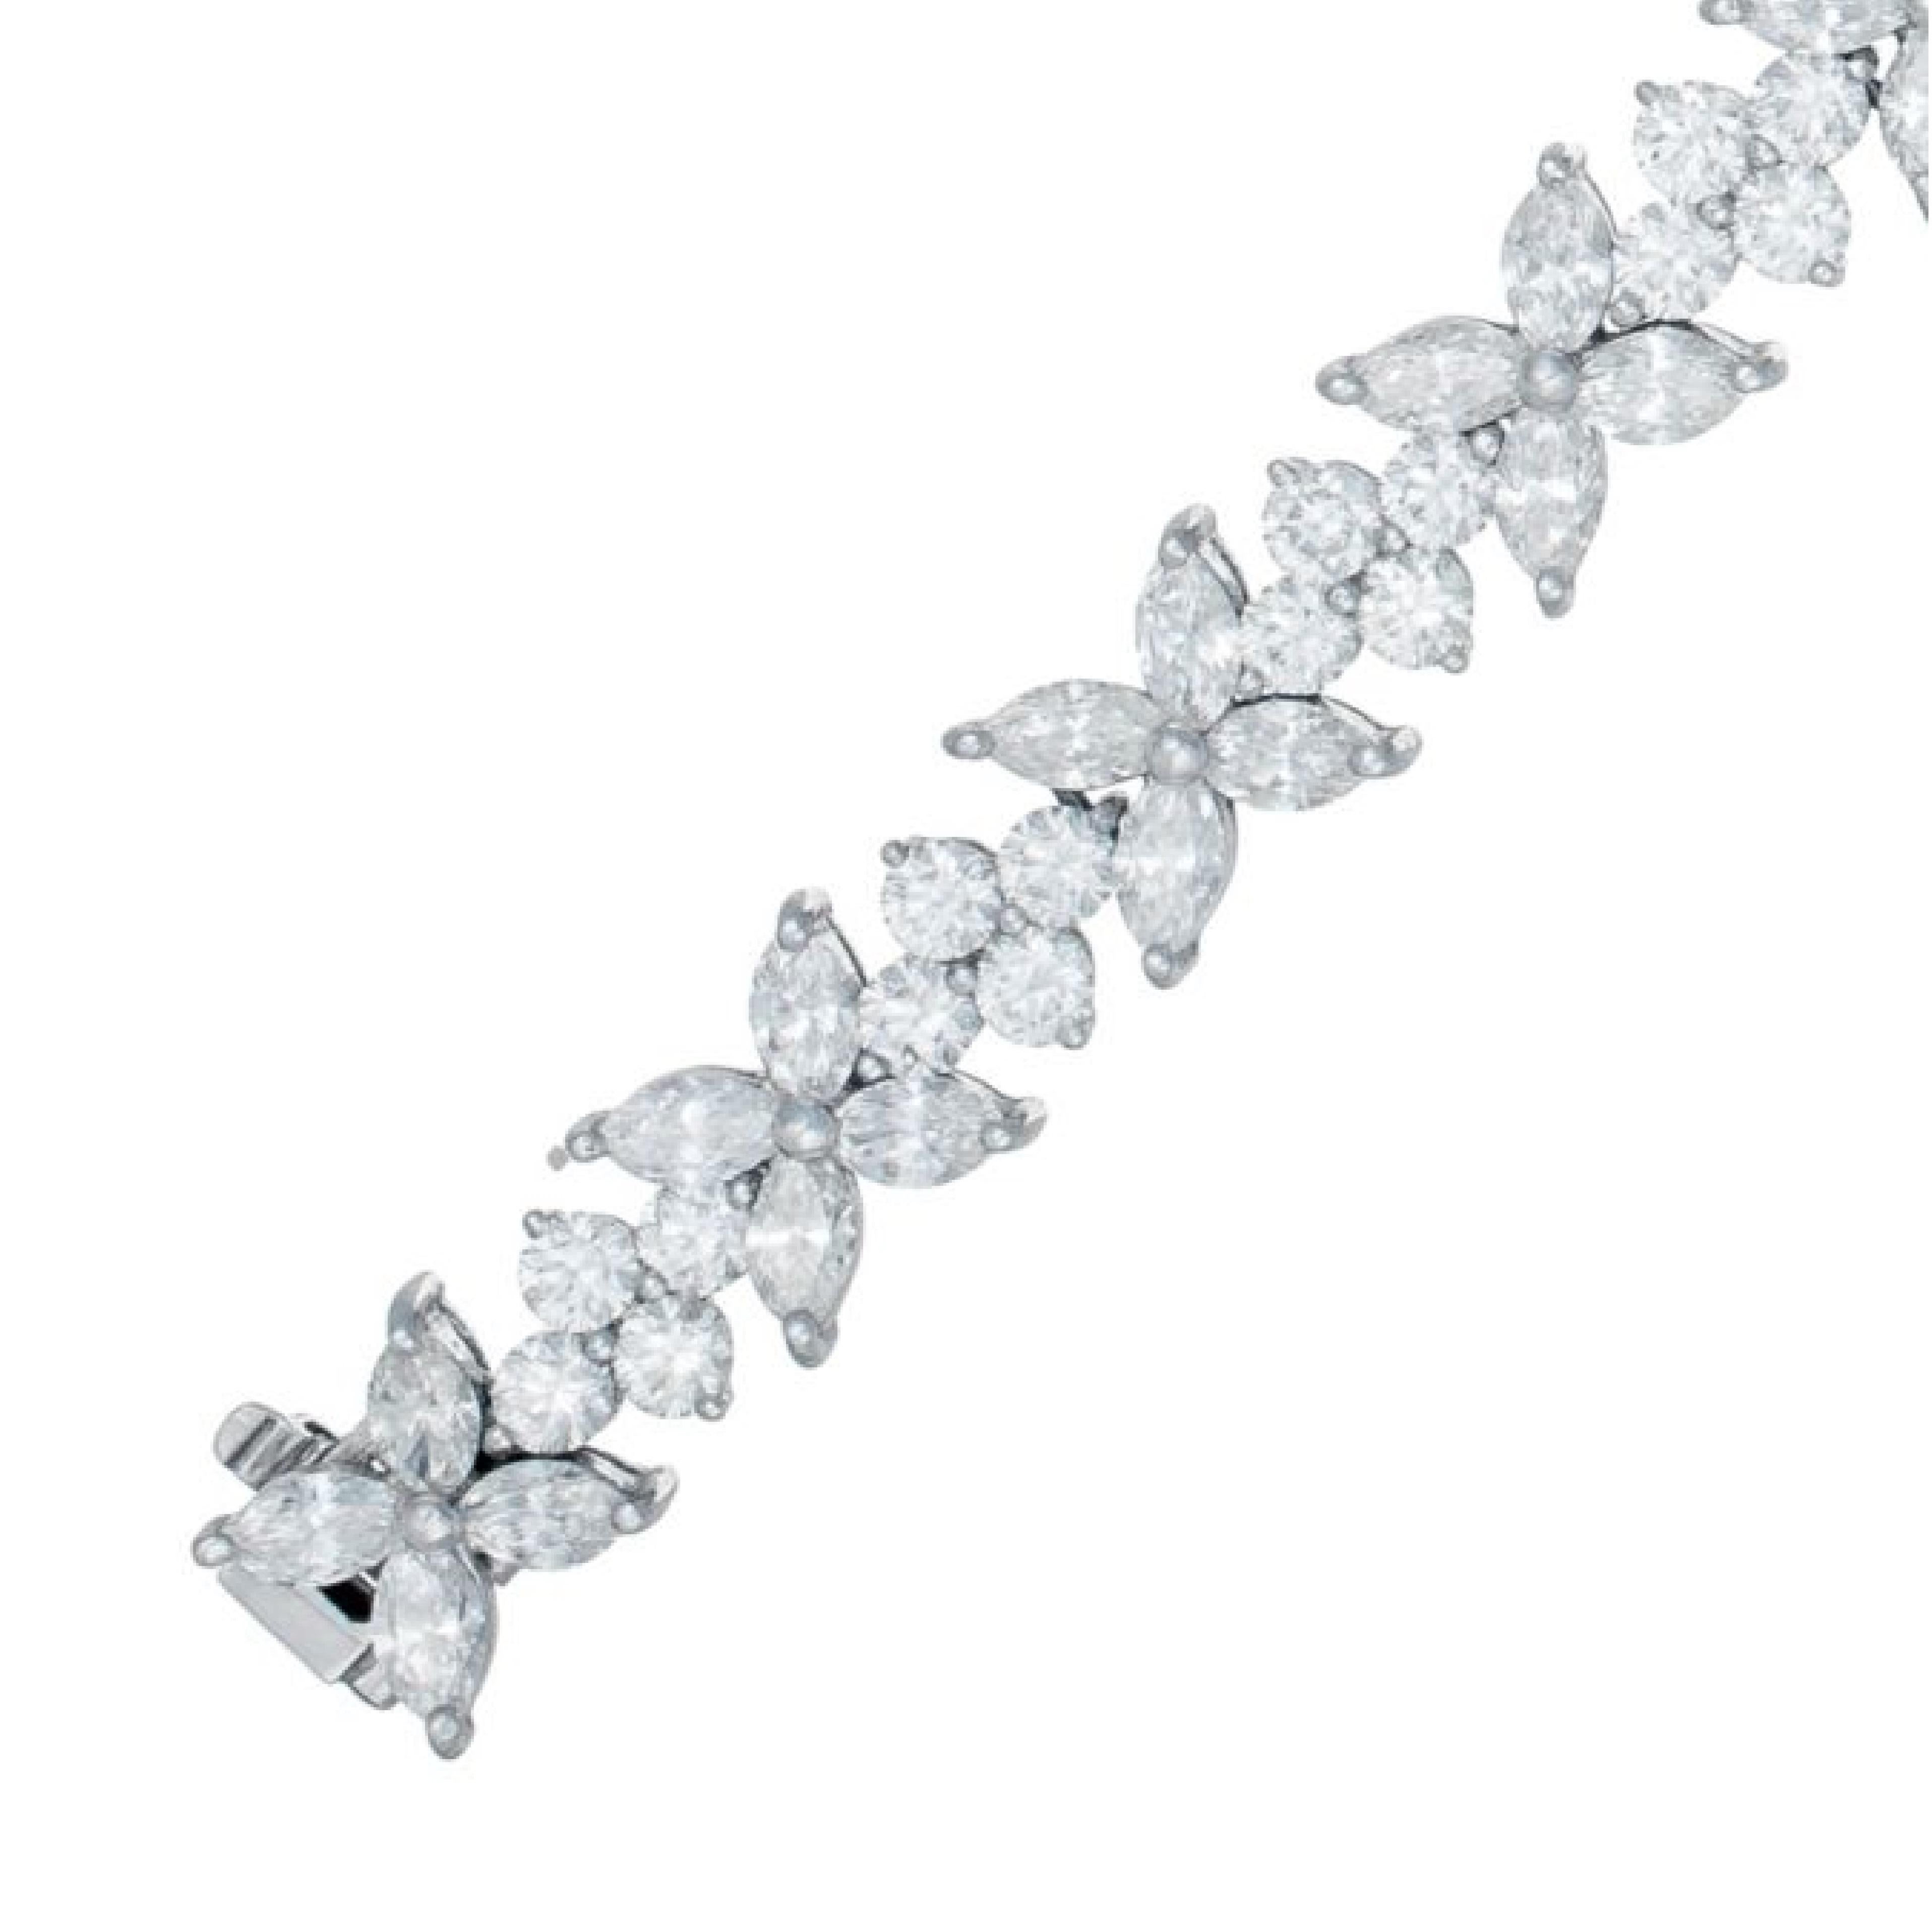 Diamant-Cluster-Armband
armband aus 18 Karat Weißgold mit 16,50 Karat Diamanten im Rund- und Marquise-Schliff in Blumenbüscheln 

Länge: 7,5